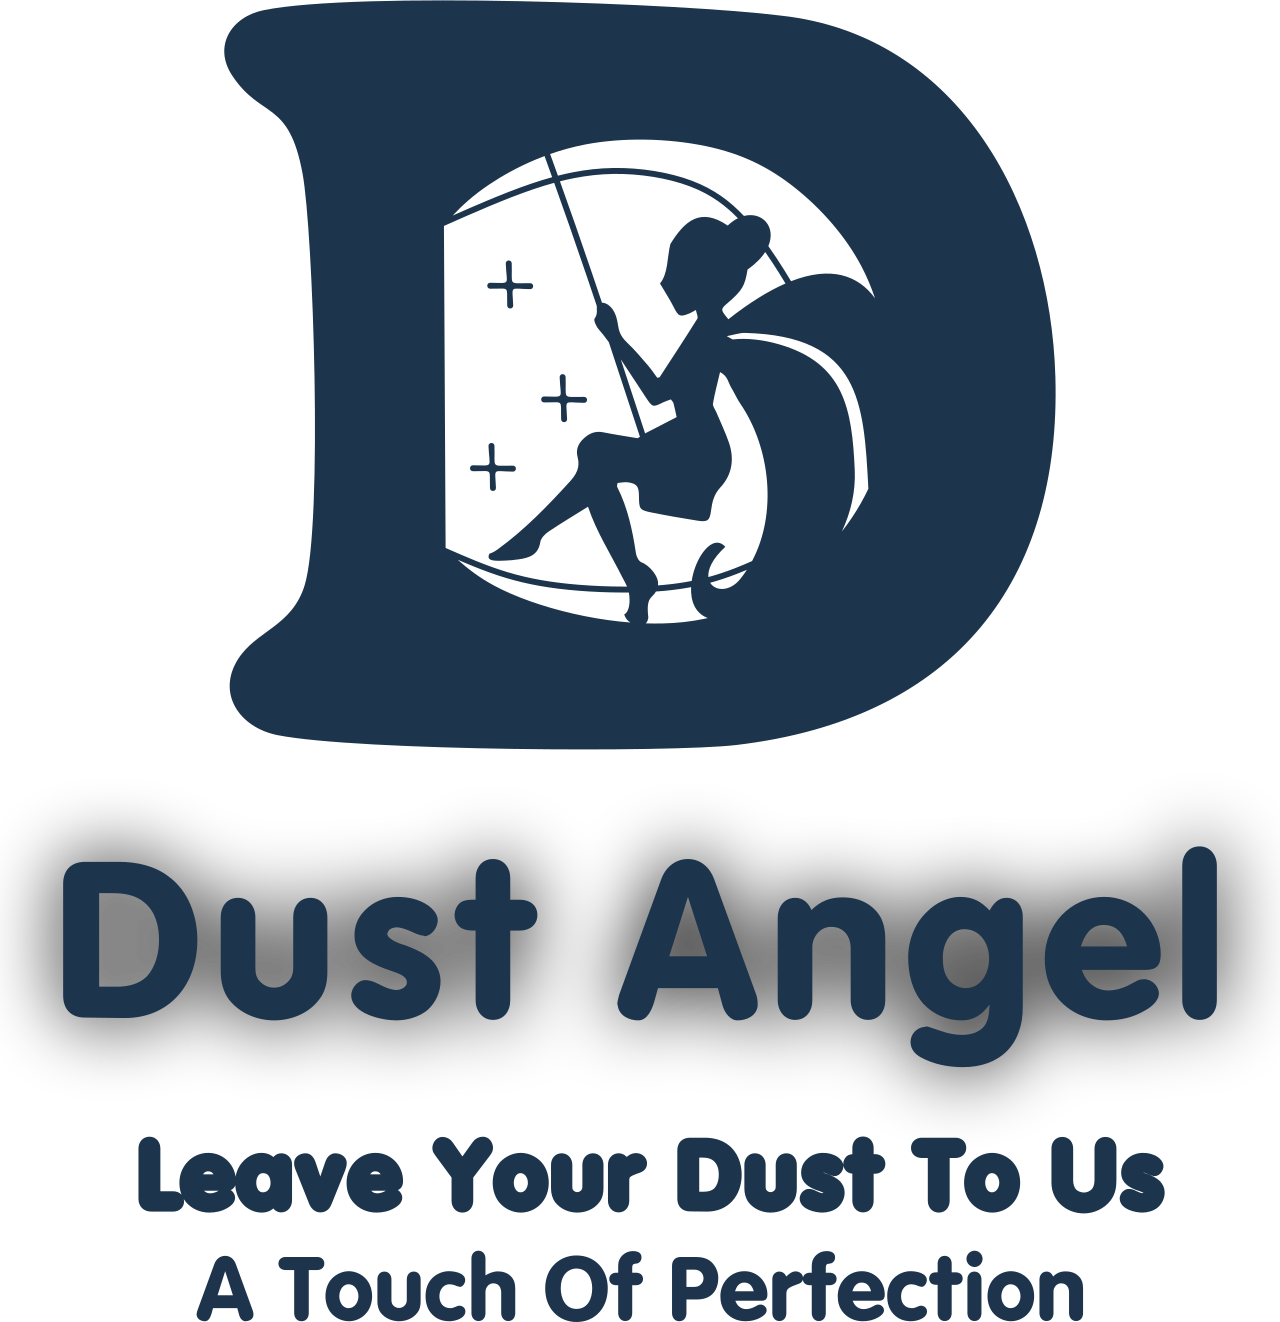 Dust Angel's logo